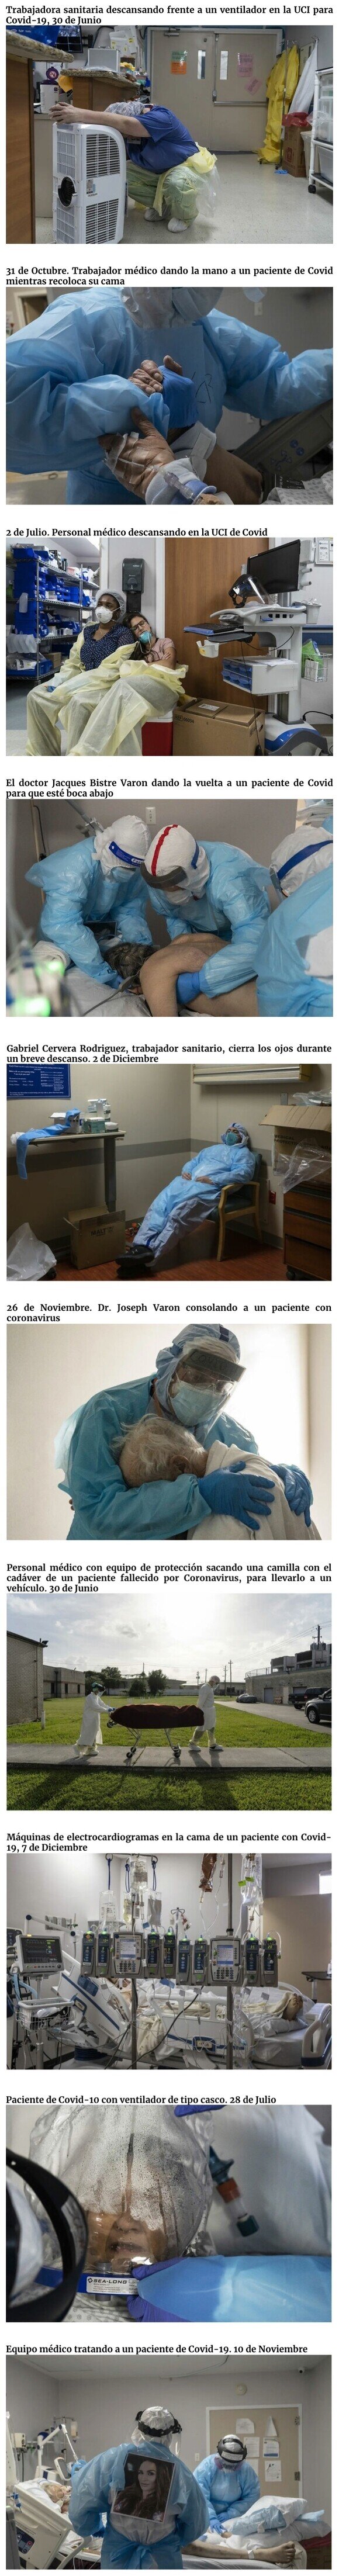 21286 - Fotos que muestran la realidad del Covid-19 en los hospitales